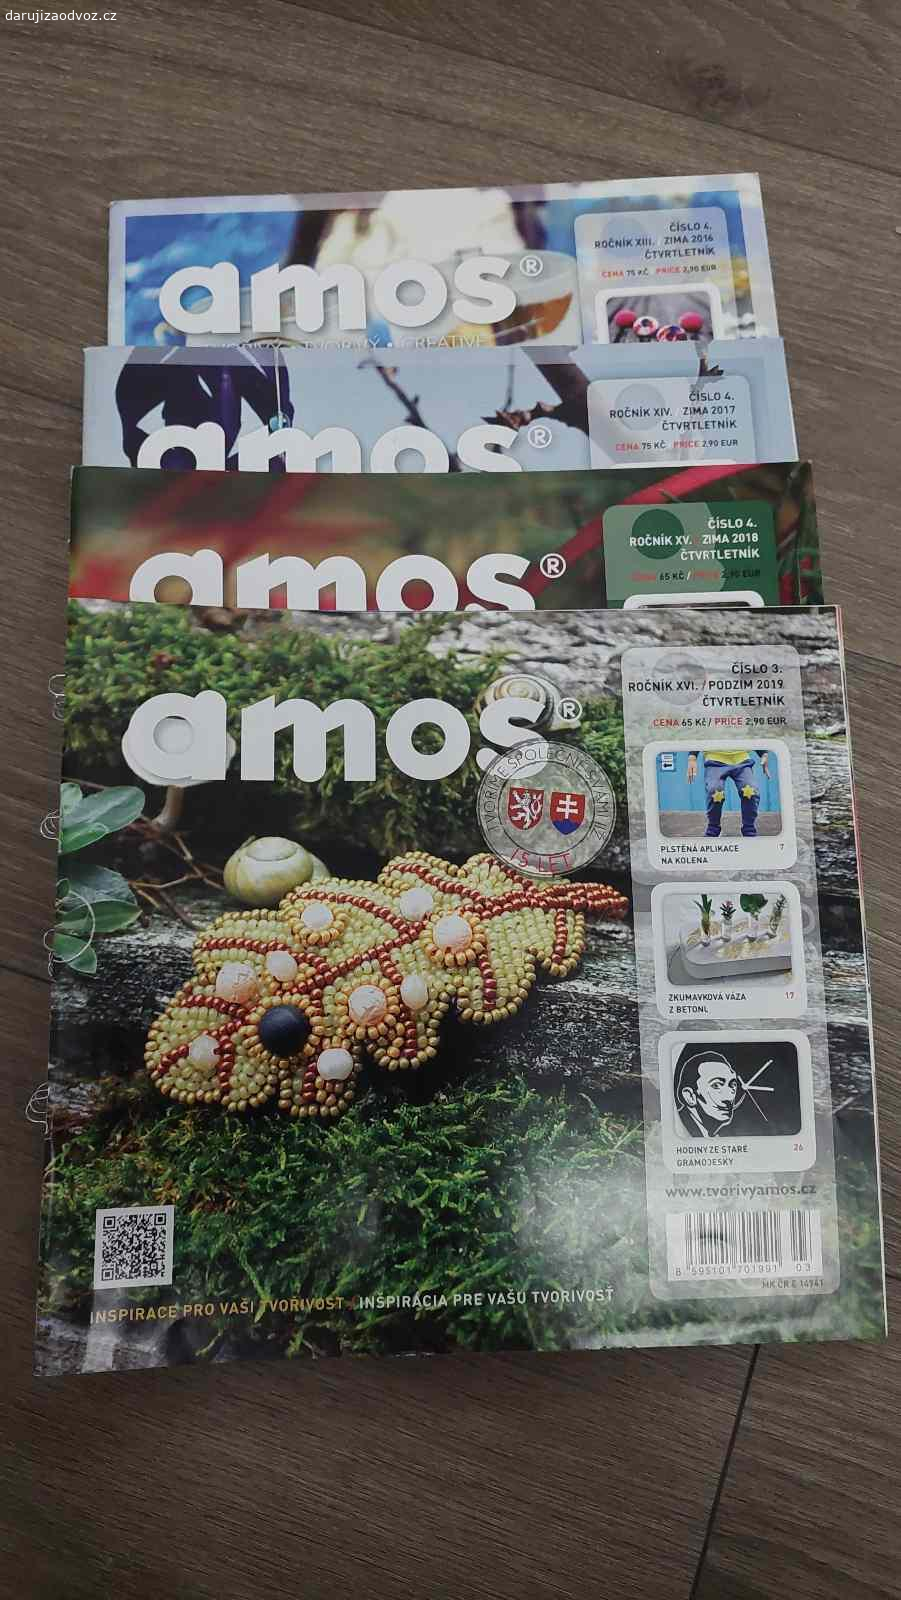 časopis Amos kreativní tvoreni. Vyměním tři komplet čtvrtletníky (2017-2019) časopisu Amos za Milka čokoládu.